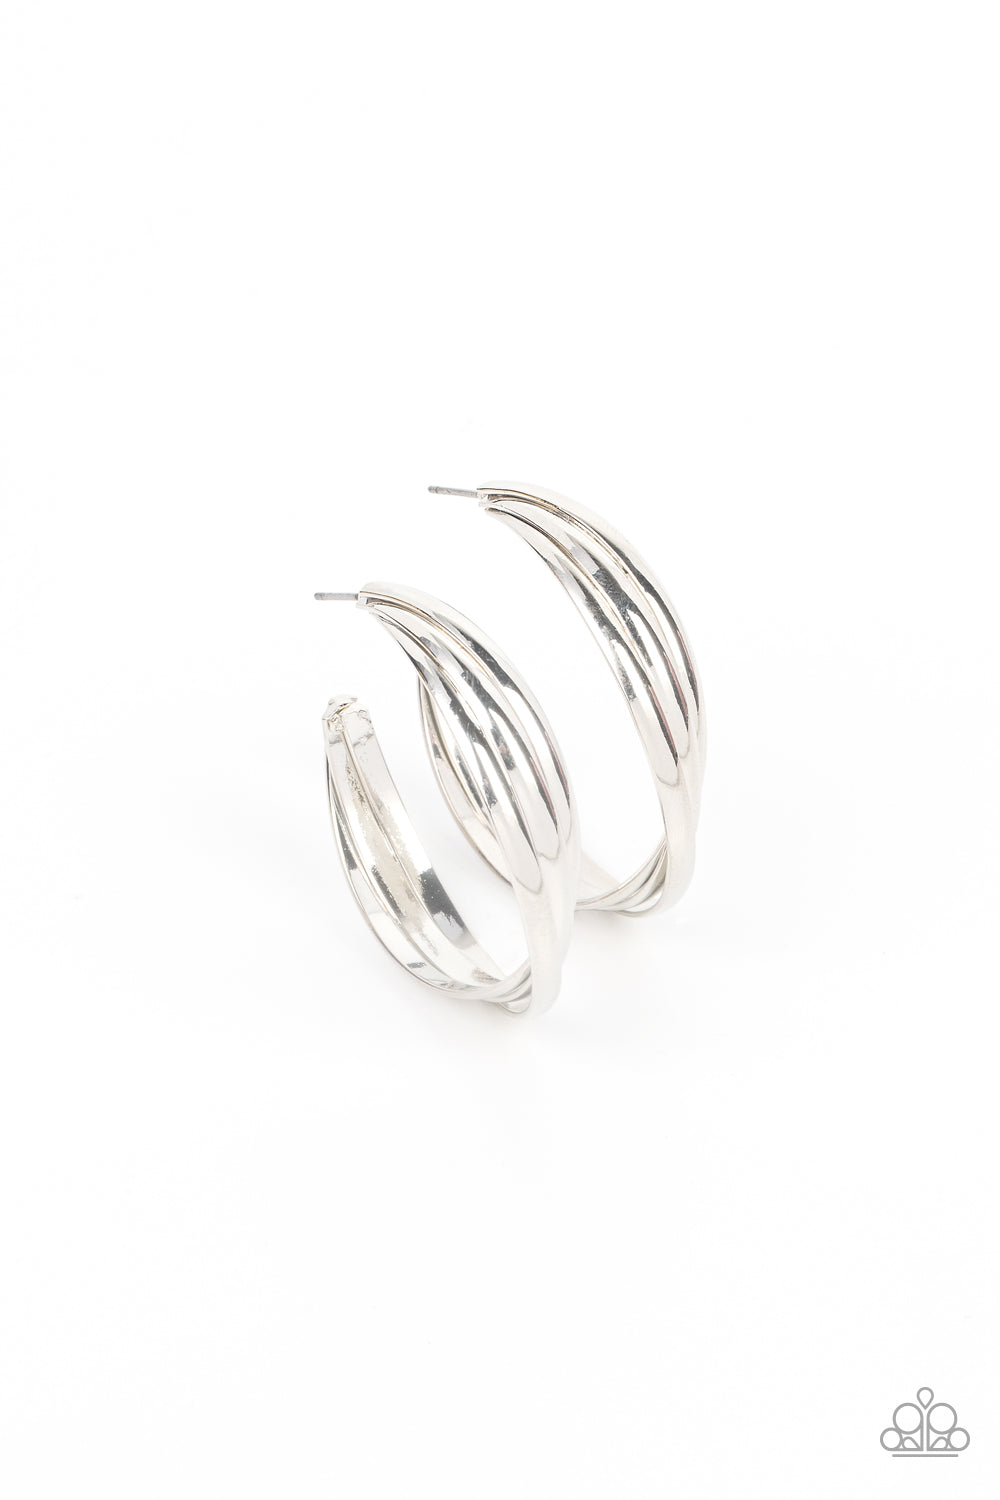 Curvy Silver Hoop Earrings  Silver Earrings – Boldiful